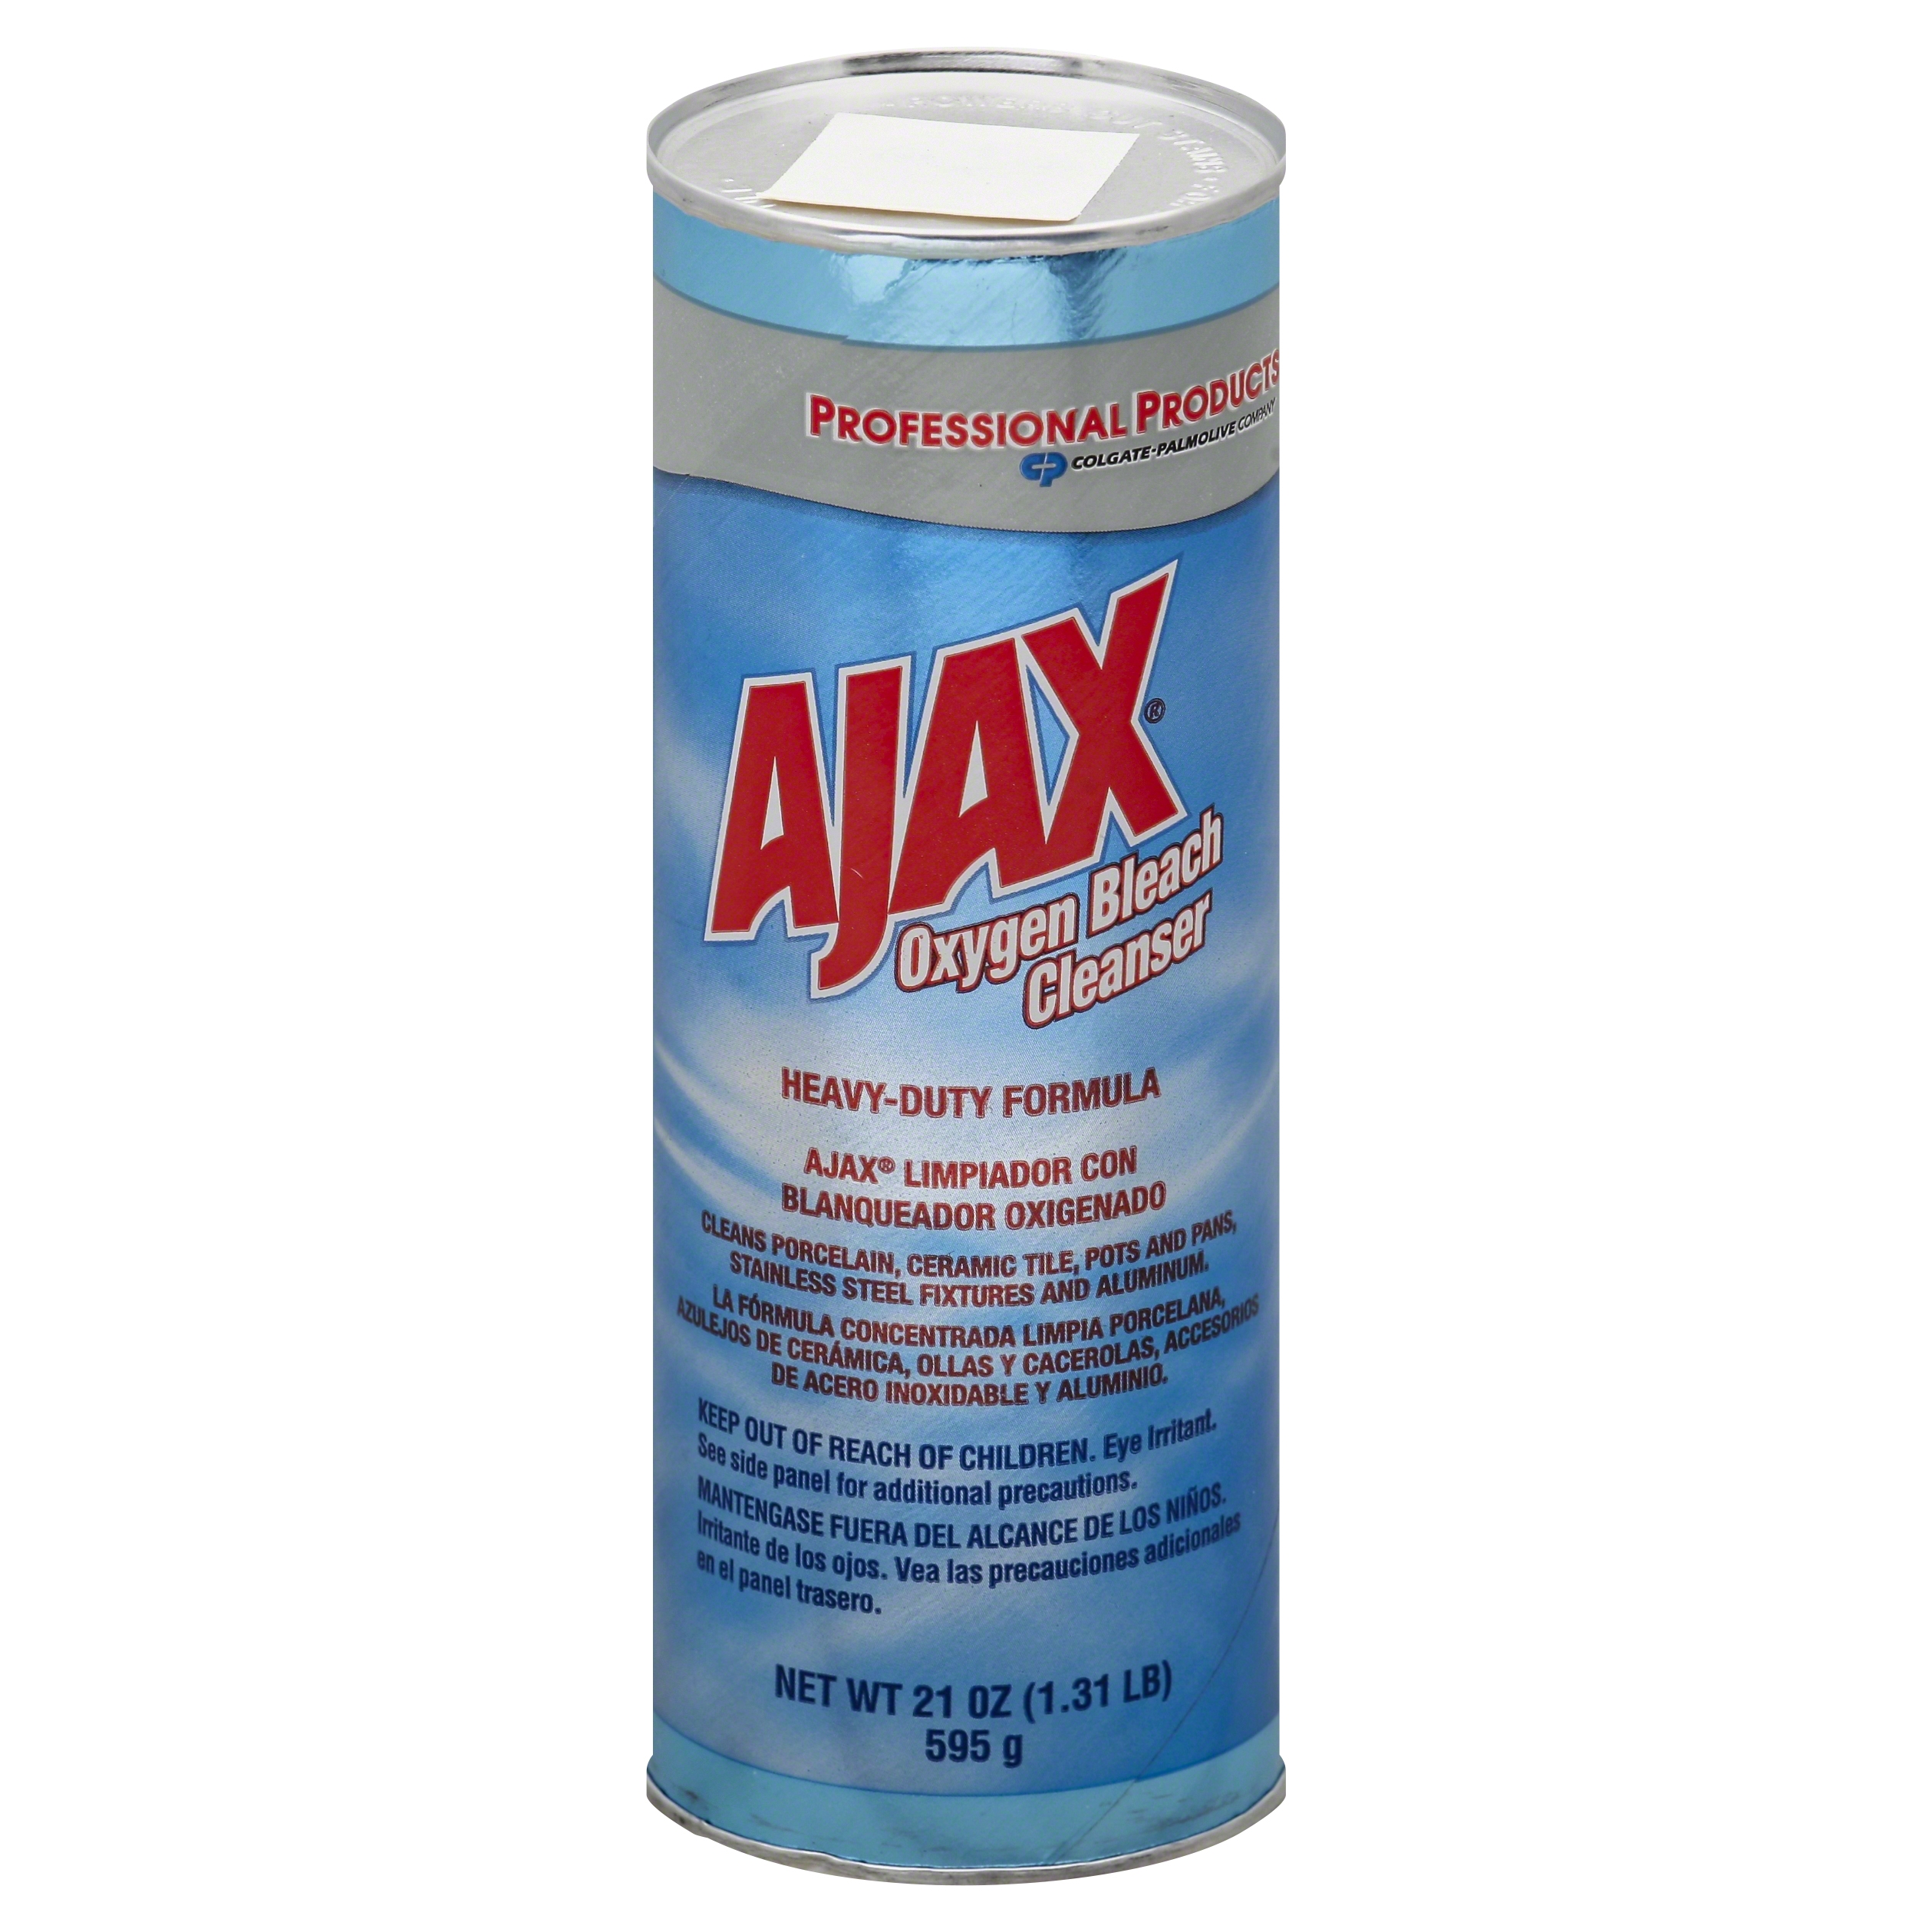 C-AJAX Powdered Bleach Cleanser (24/21oz) #0214278